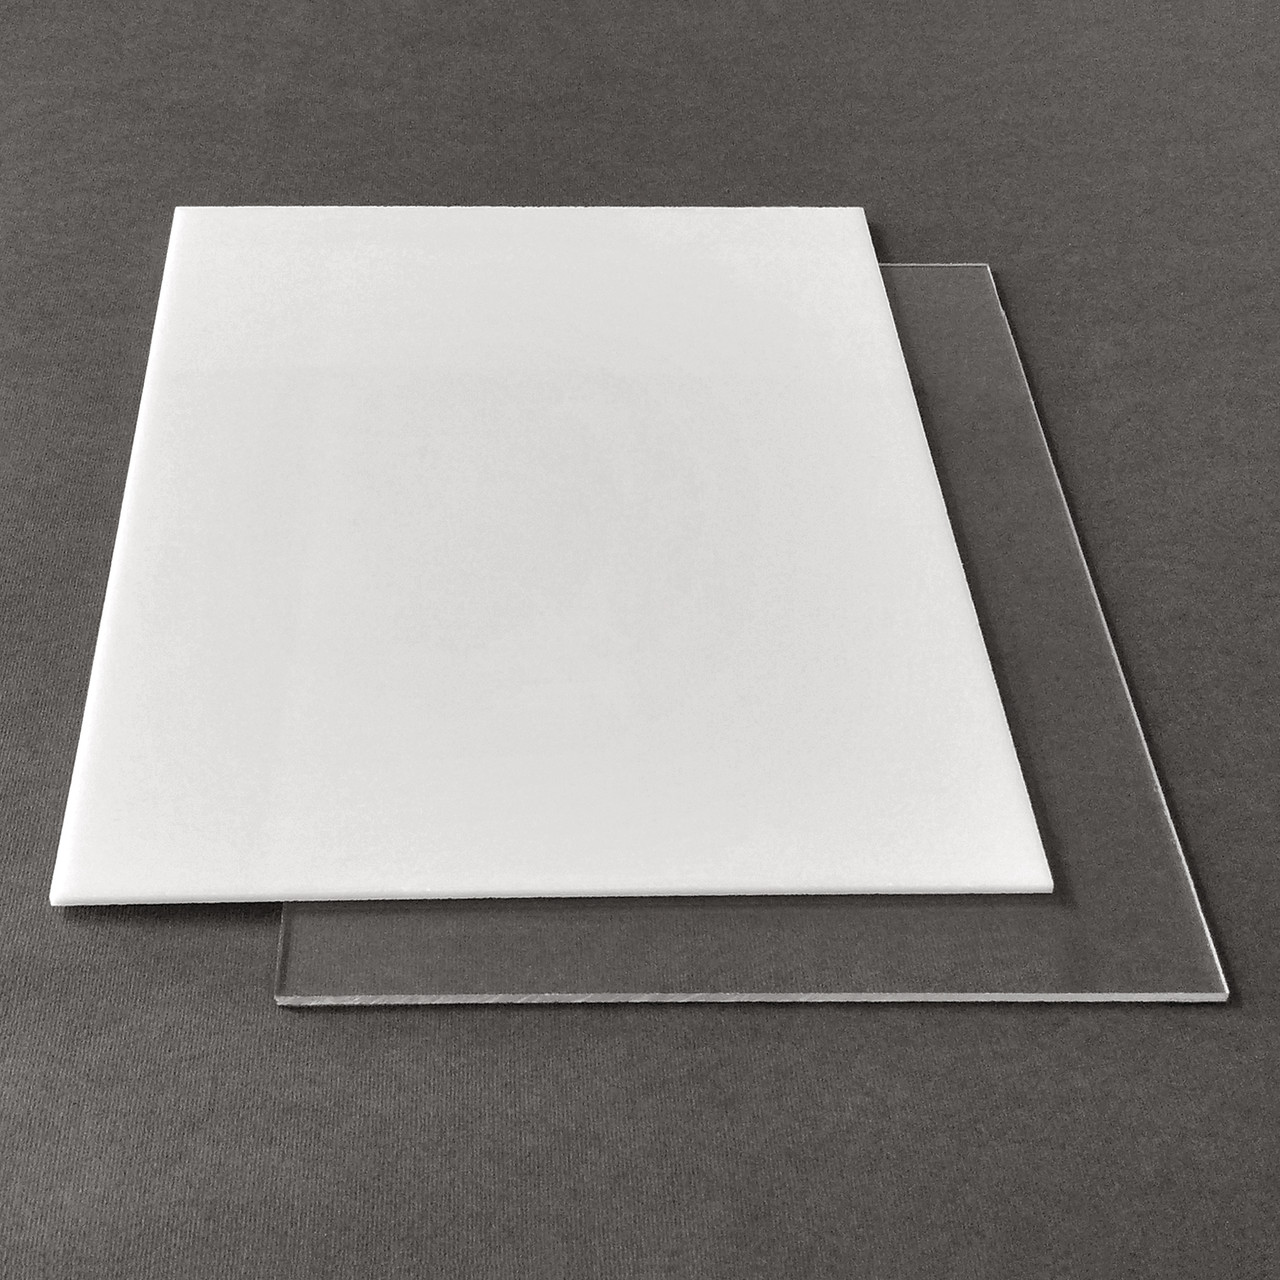 Рекламний пластик САН Plexan, прозорий, лист 2.05 х 3.05 м, 4 мм